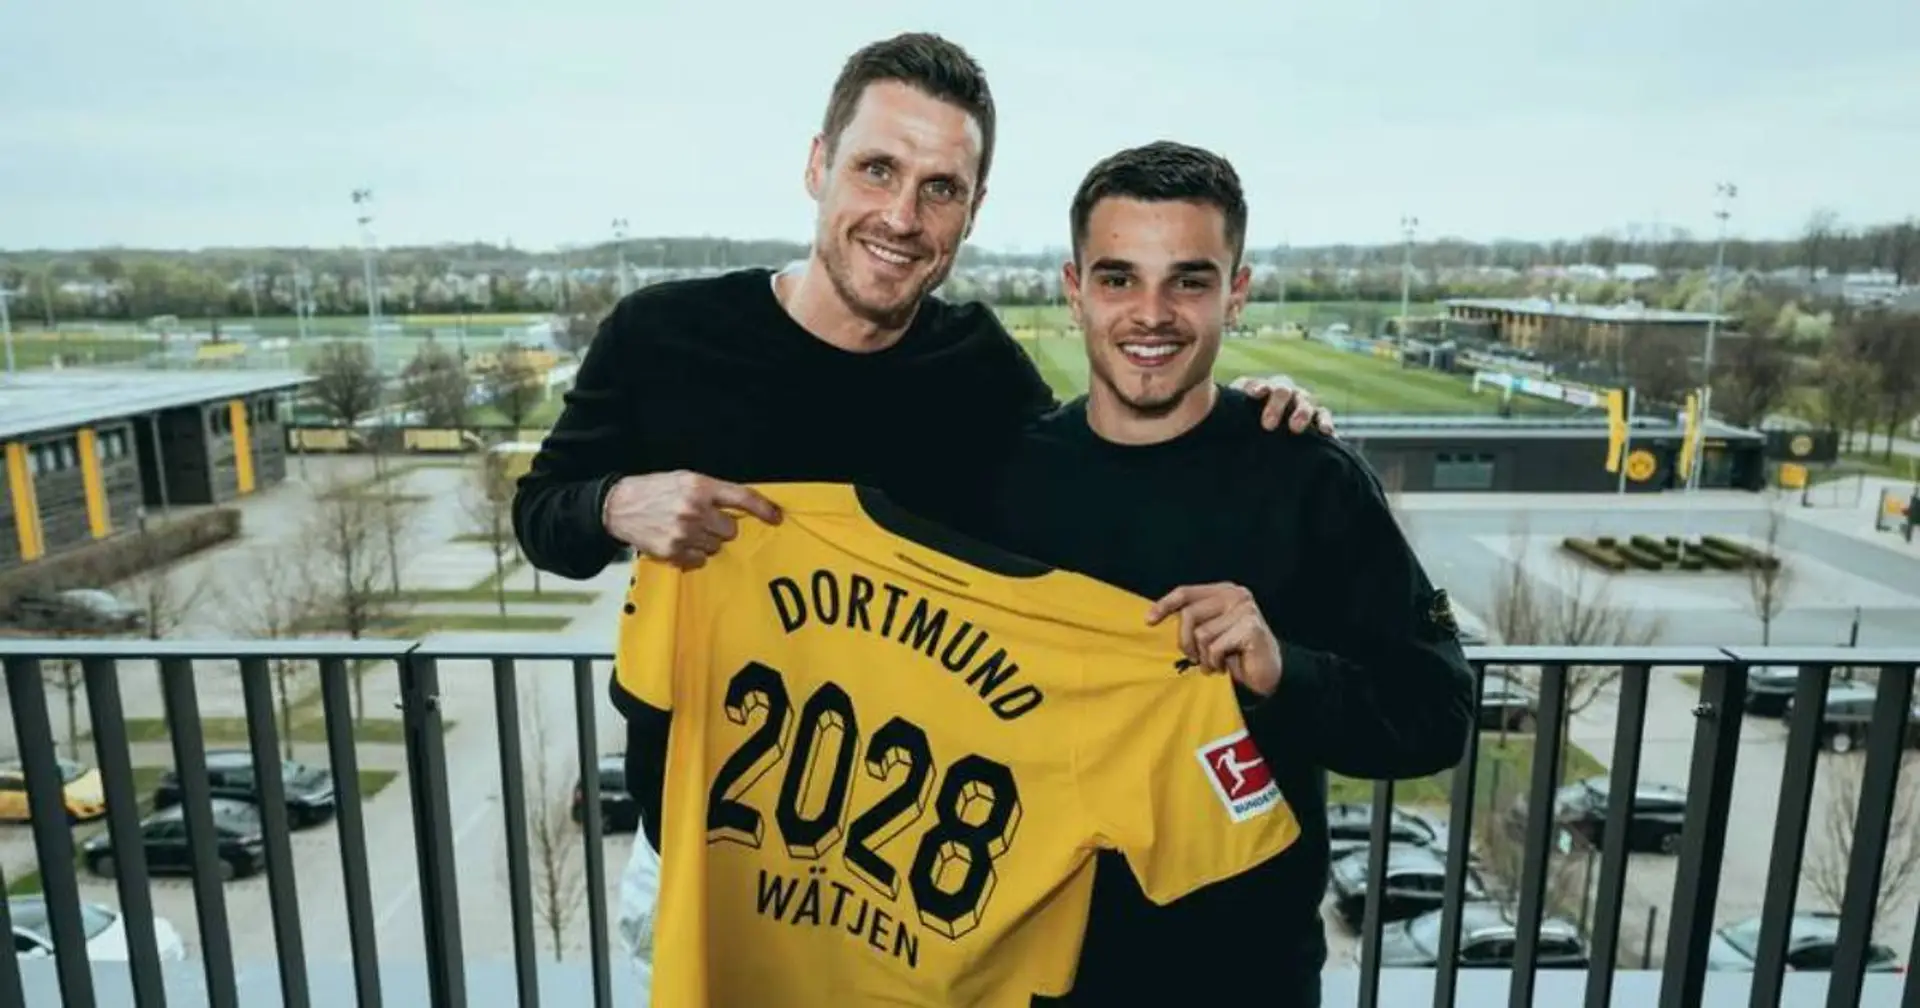 OFFIZIELL: Kjell Wätjen hat seinen Vertrag mit BVB verlängert